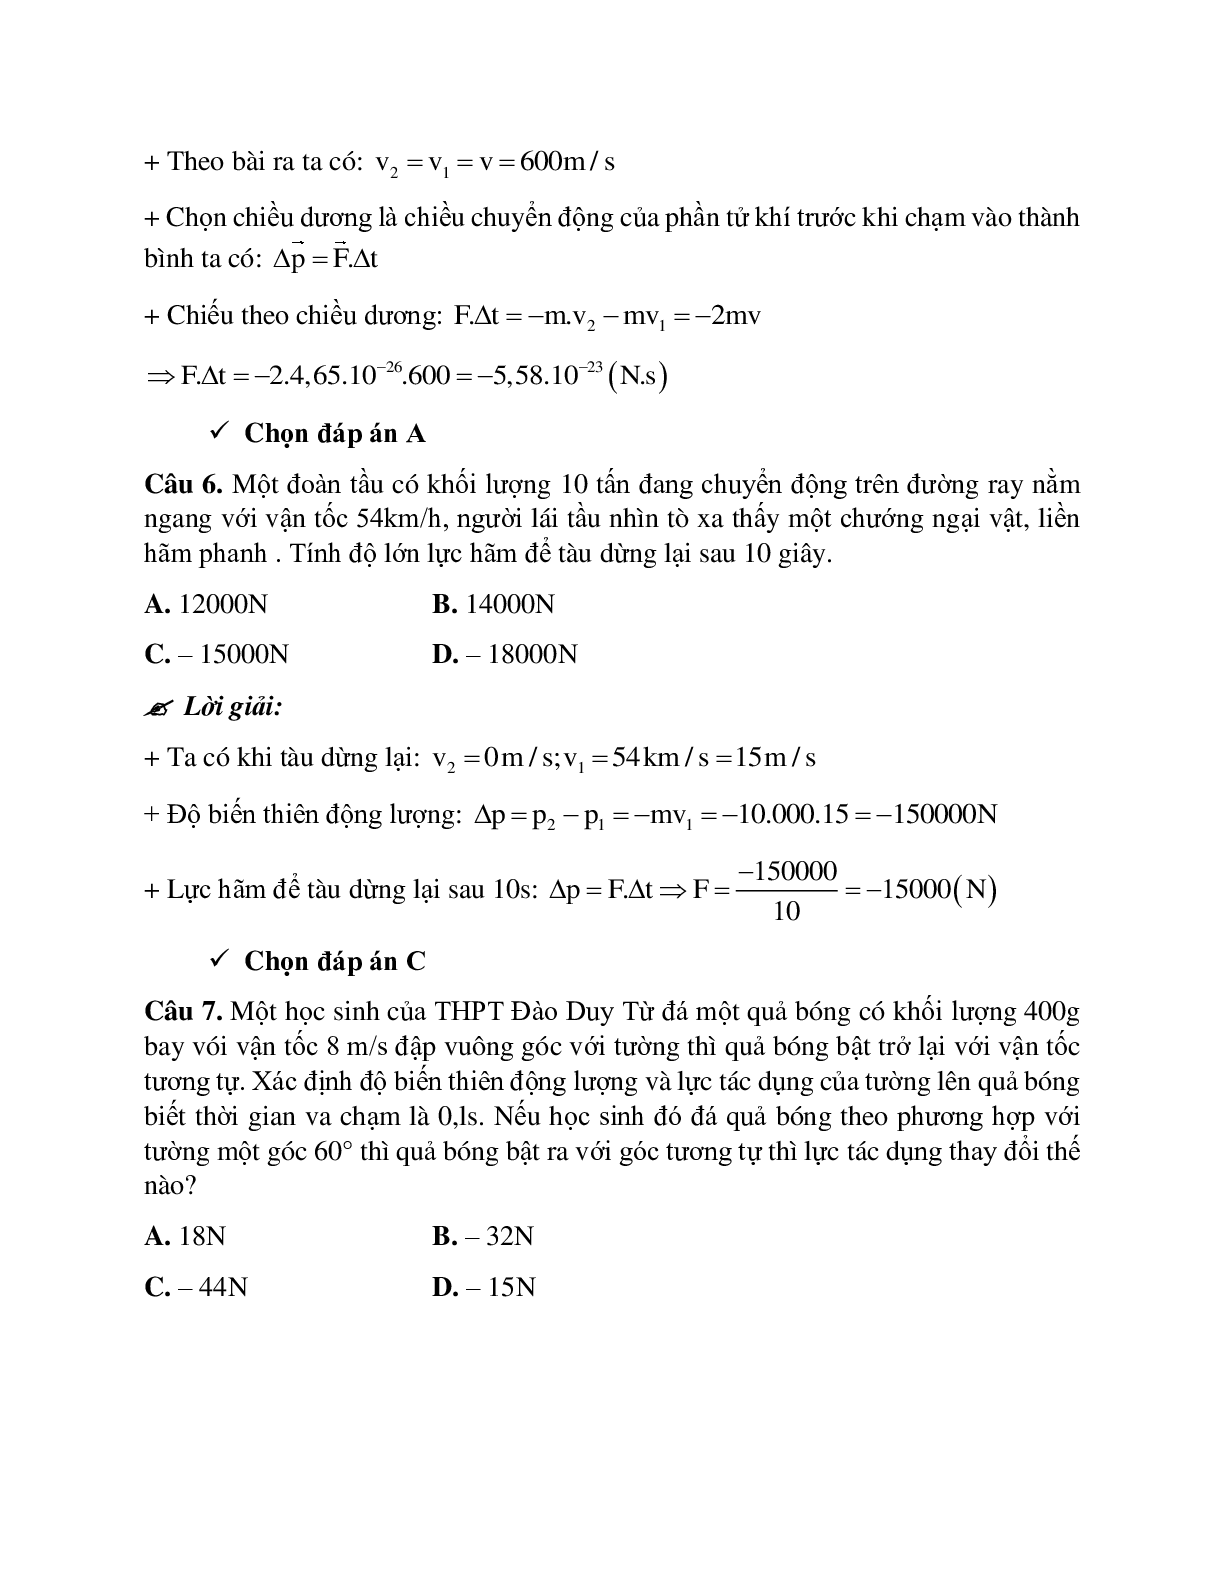 Phương pháp giải và bài tập về Xác định tổng động lượng, độ biến thiên động lượng và lực tác dụng (trang 8)